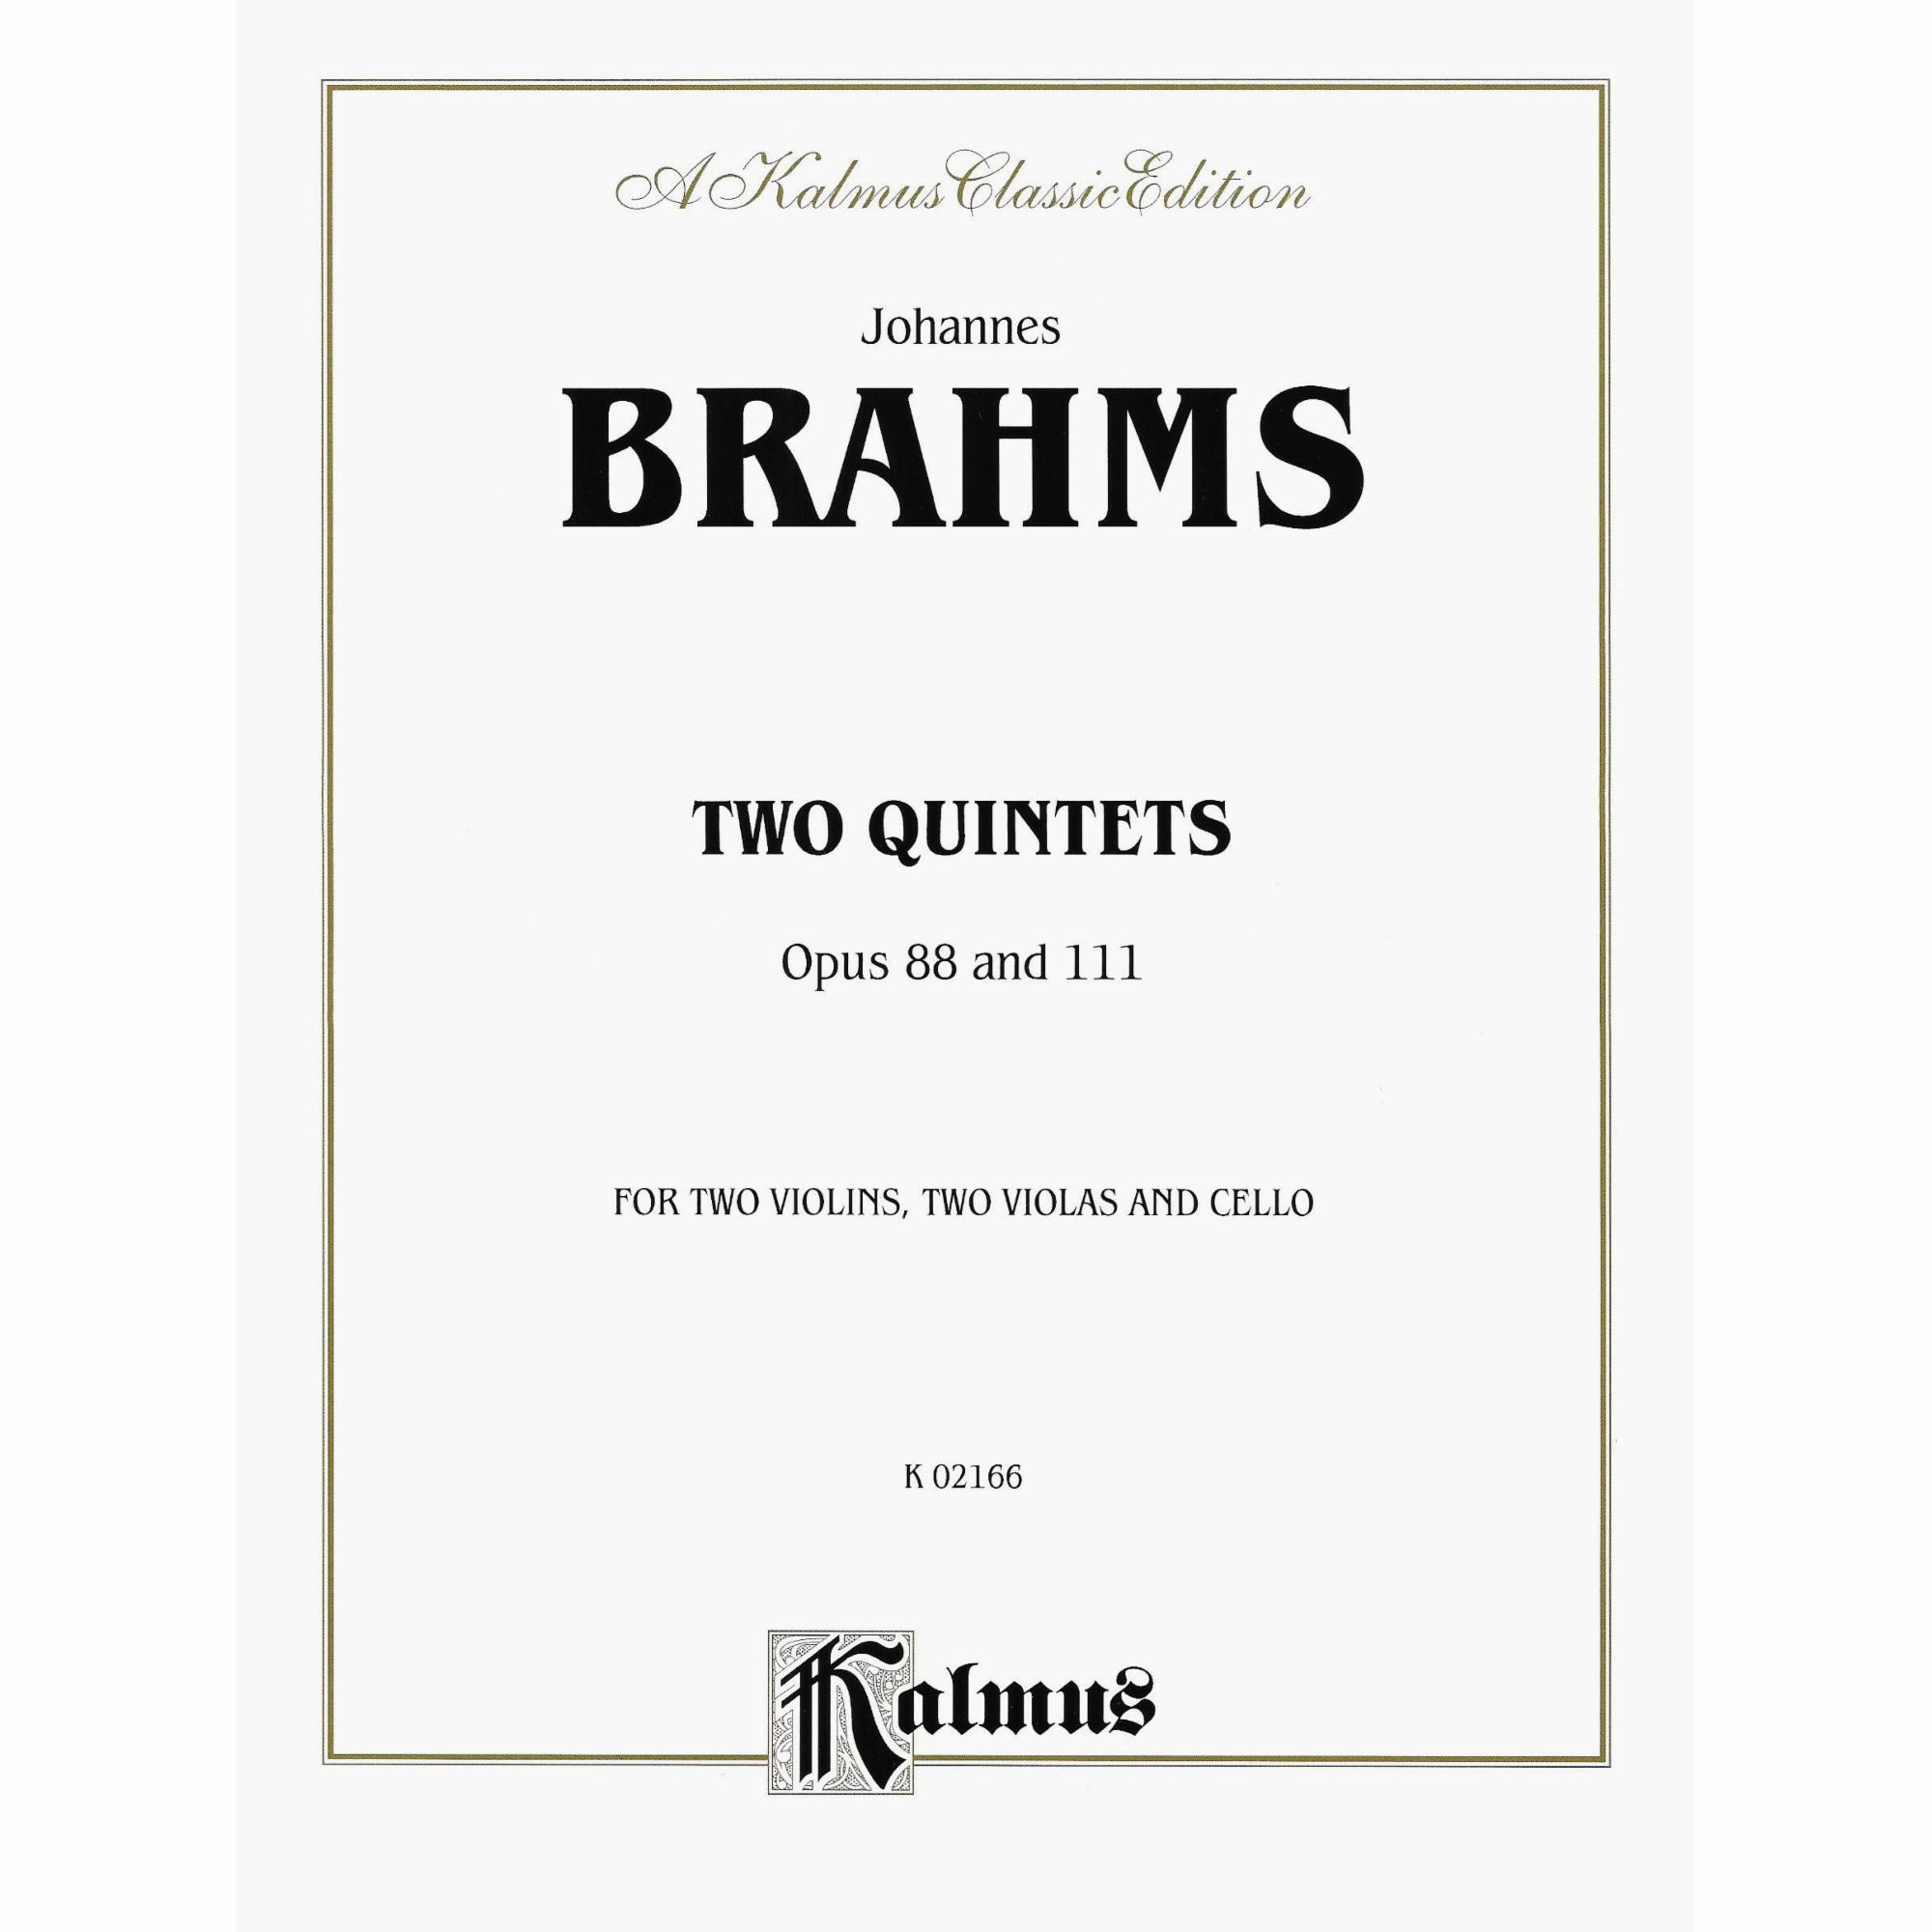 Brahms -- Two Quintets, Op. 88 & 111